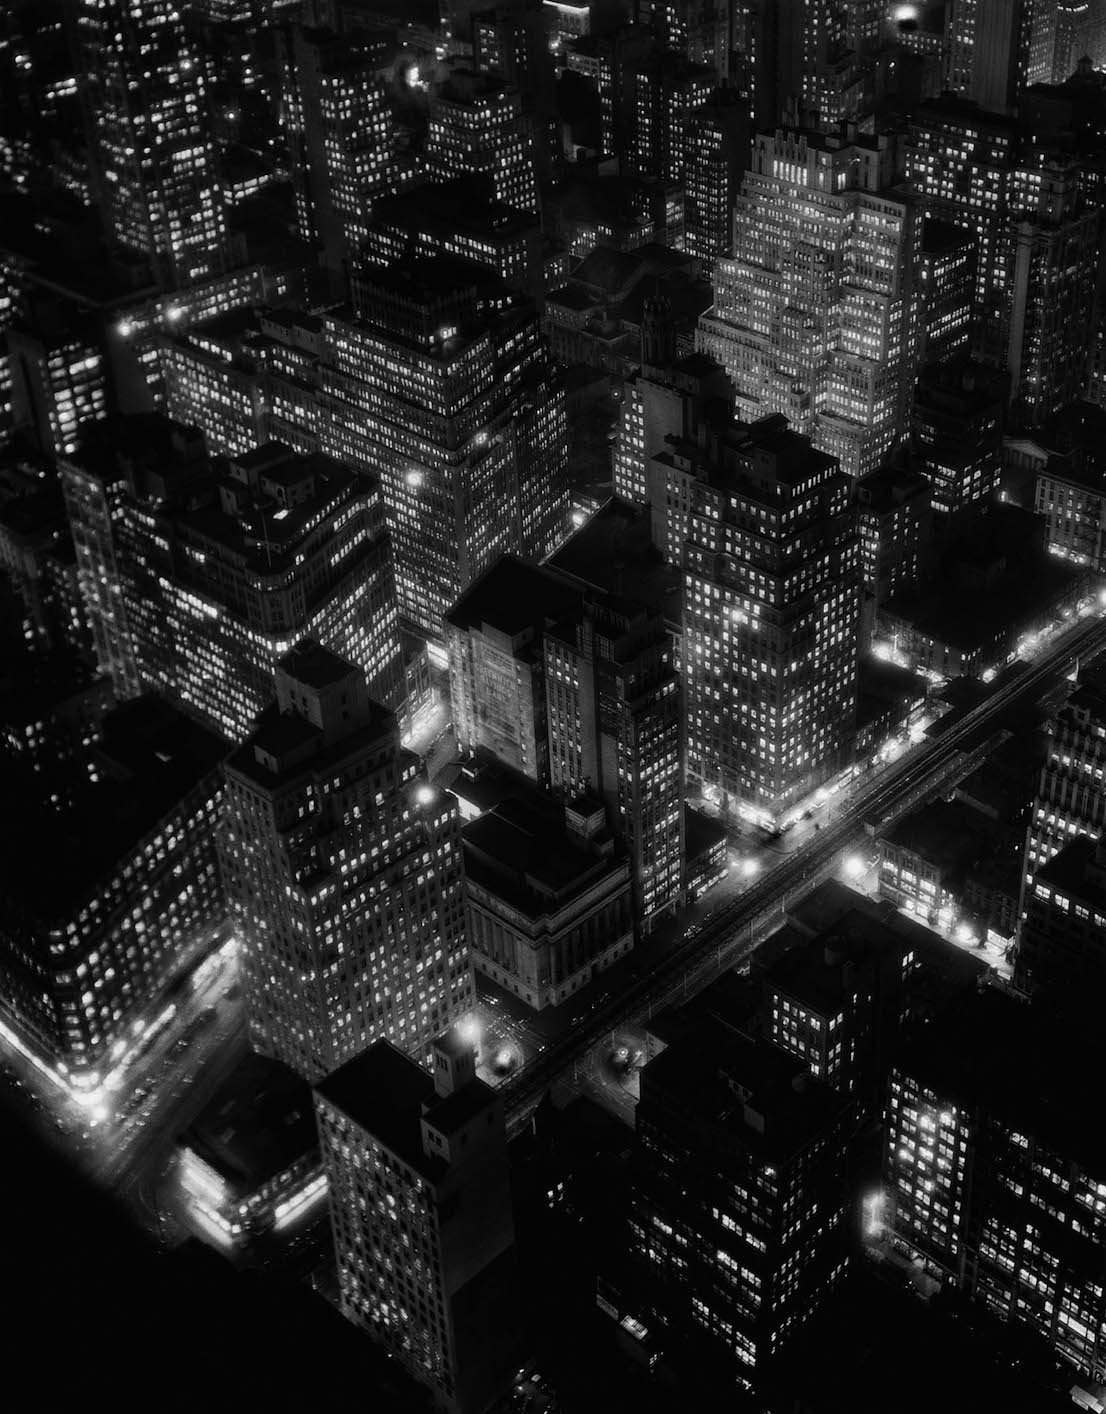 Berenice Abbott, New York City, 1932.